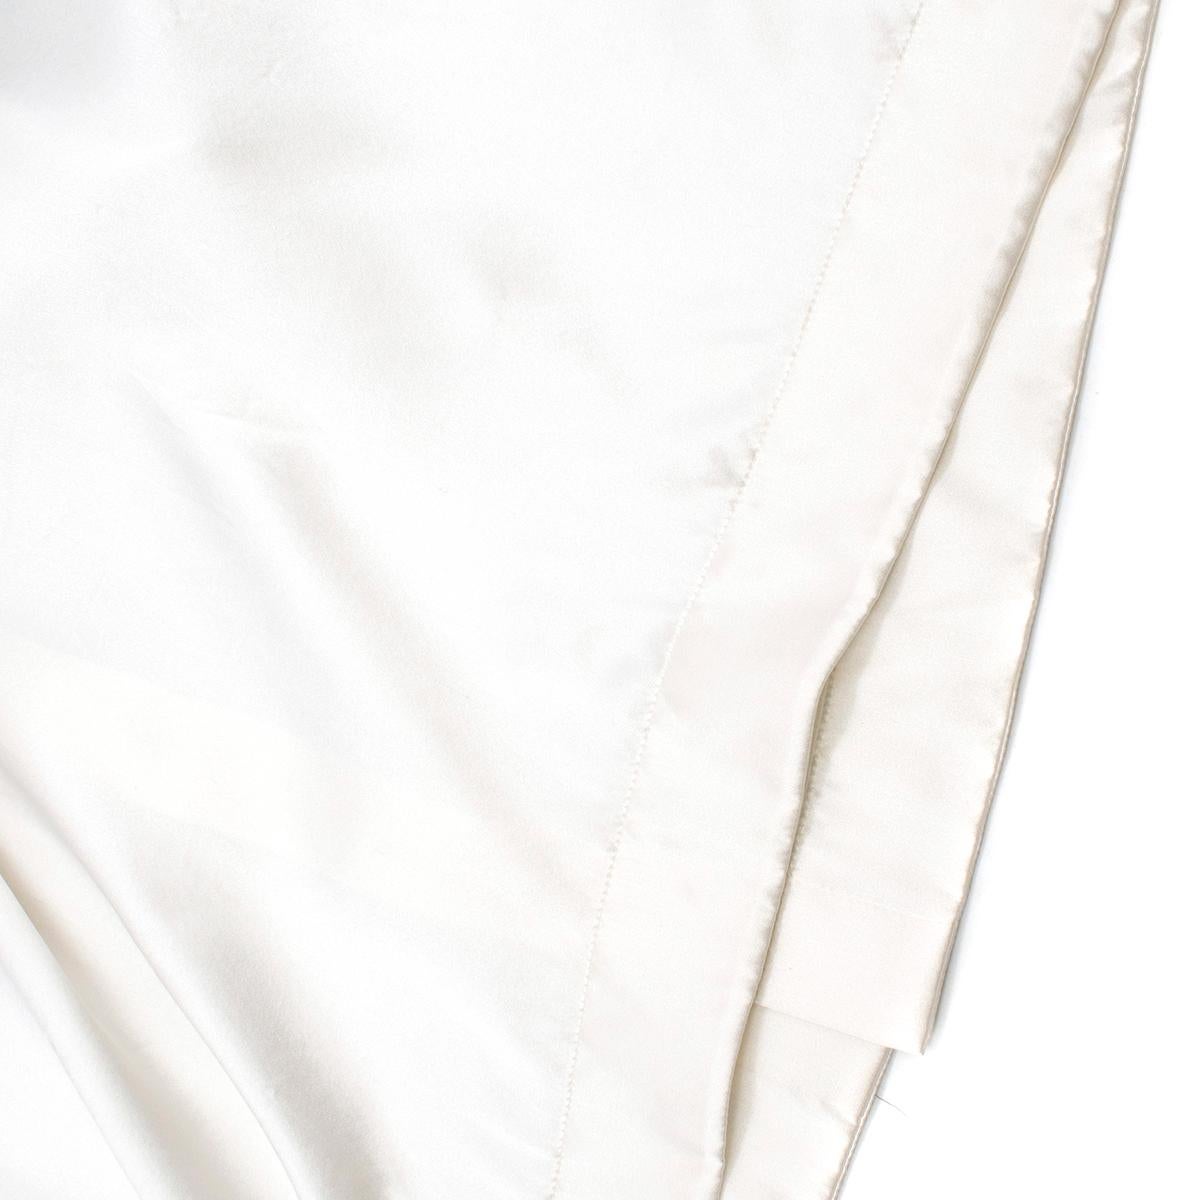 Women's Loewe Silk Black & White Drape Print Button Back Top estimated SIZE L